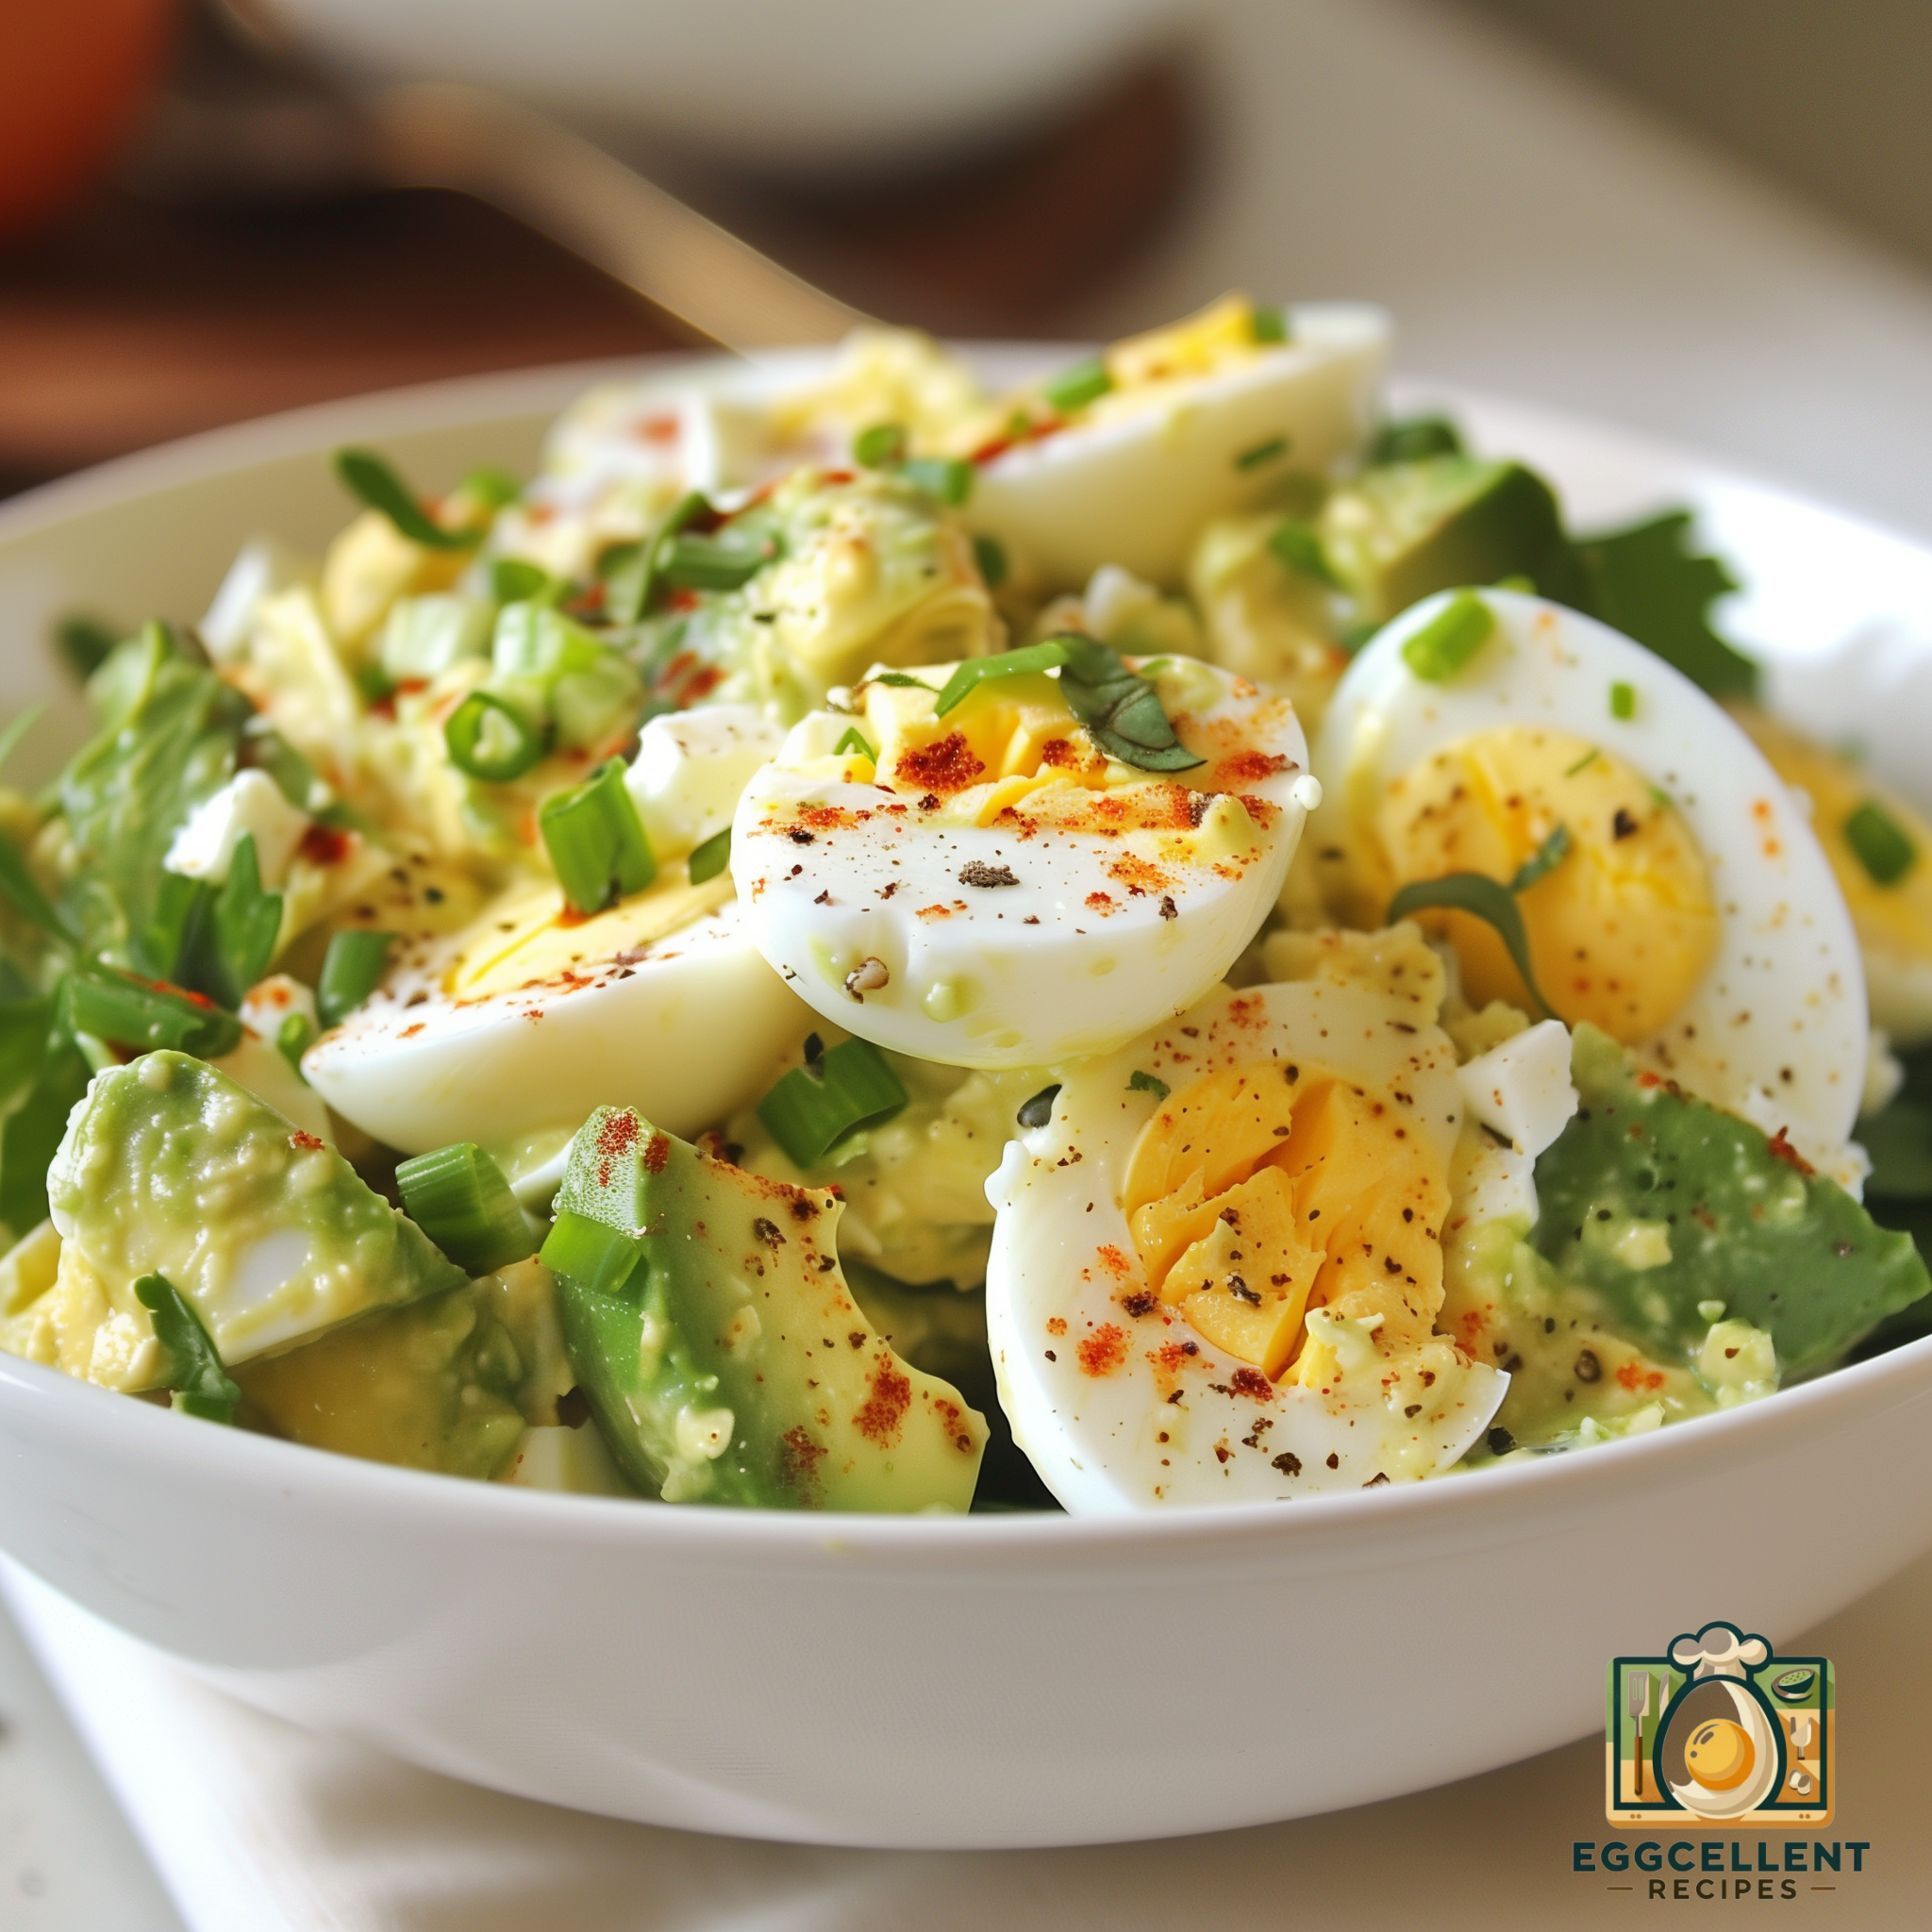 Avocado and Egg Salad Recipe